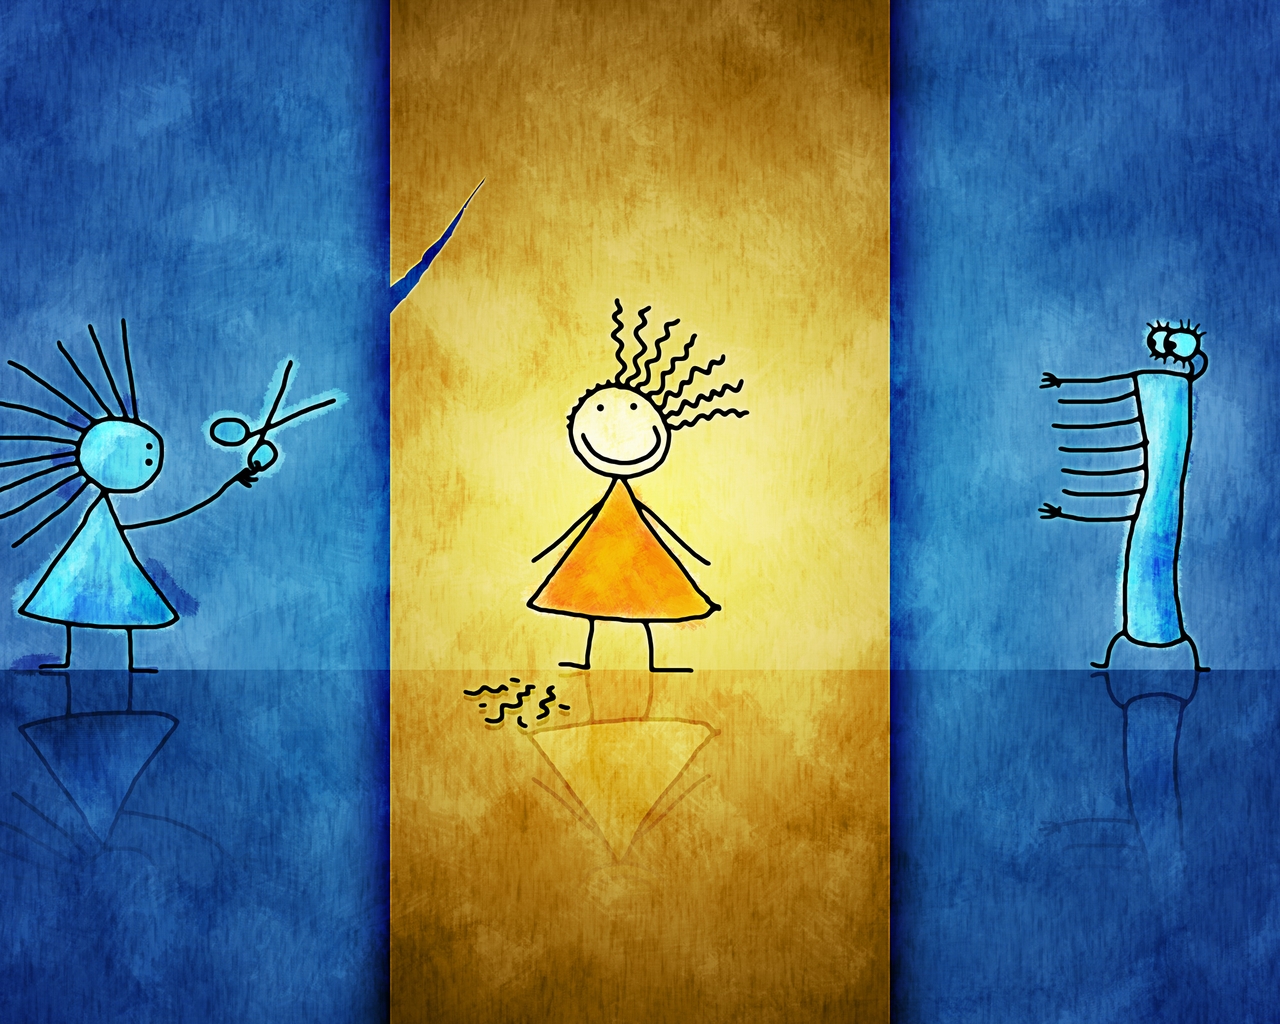 Картинка: Девочки, стрижка, ножницы, юбка, синий, жёлтый, лента, большеглазый